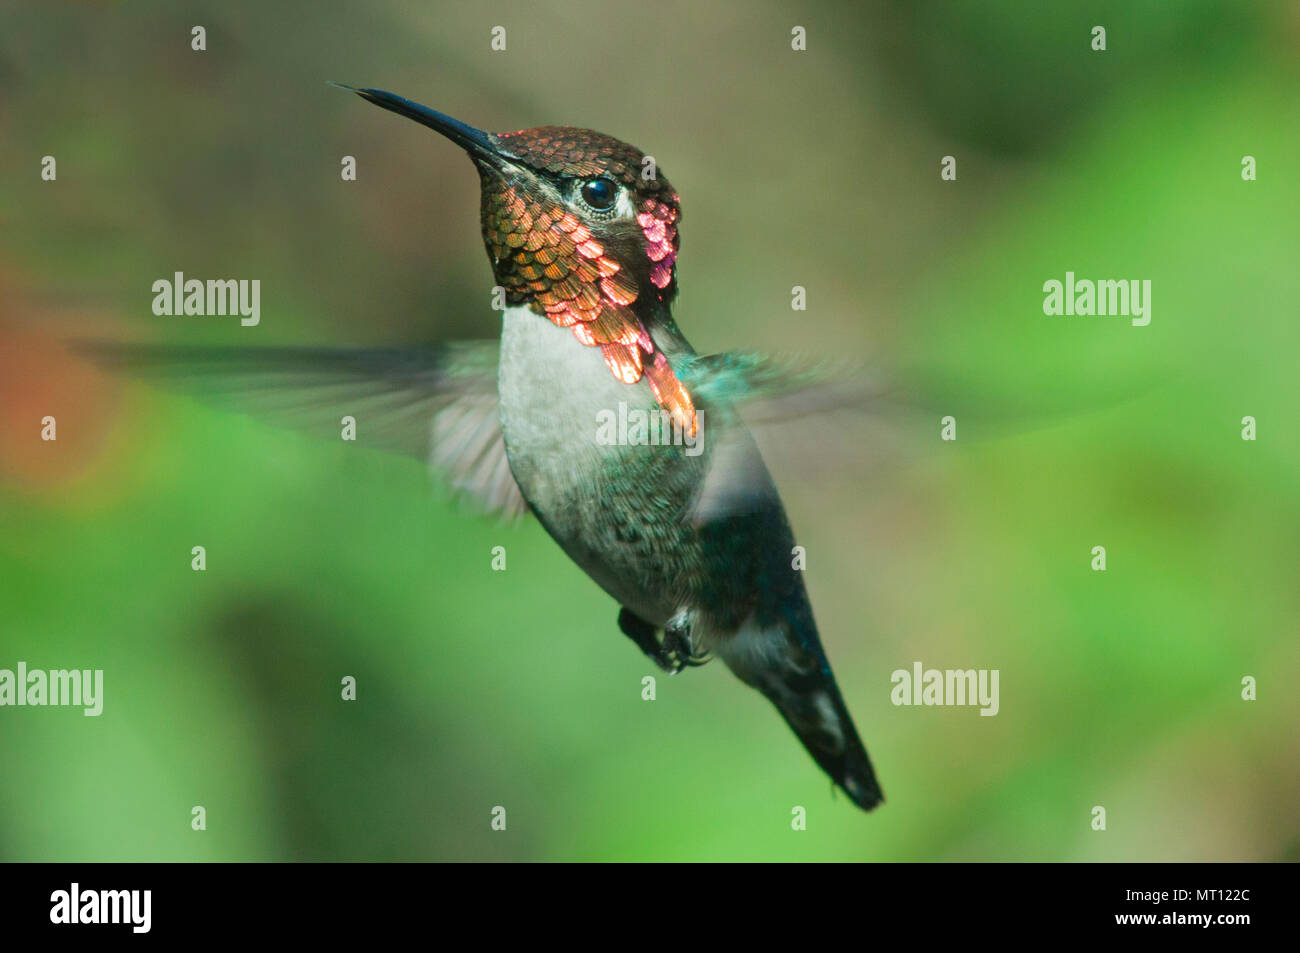 Las aves más pequeñas del mundo, bee hummingbird (Mellisuga helenae), o el zunzuncito. Flotando, Península de Zapata, Cuba - endémica Foto de stock